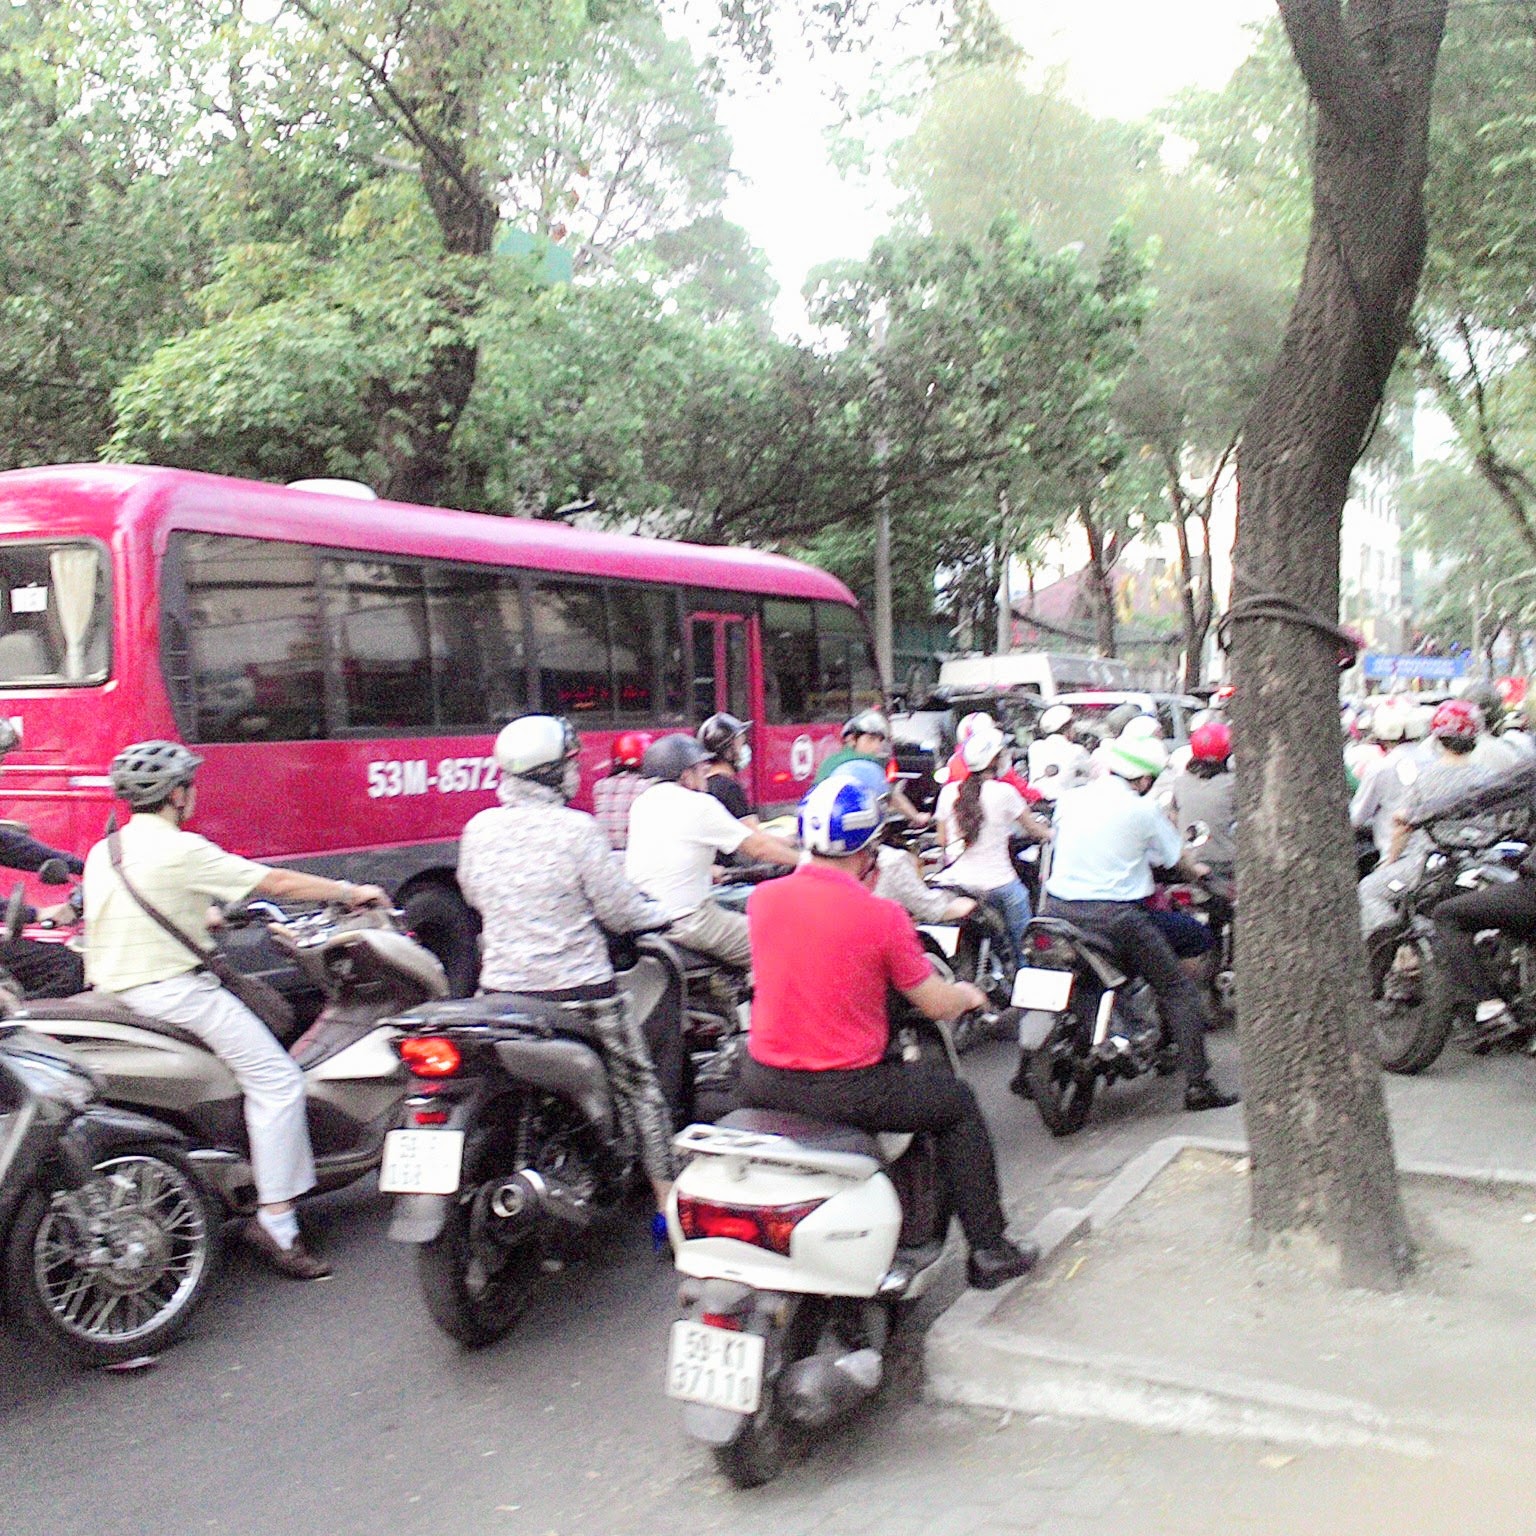 VNTB – Sài Gòn cấm đường nhưng không kẹt xe